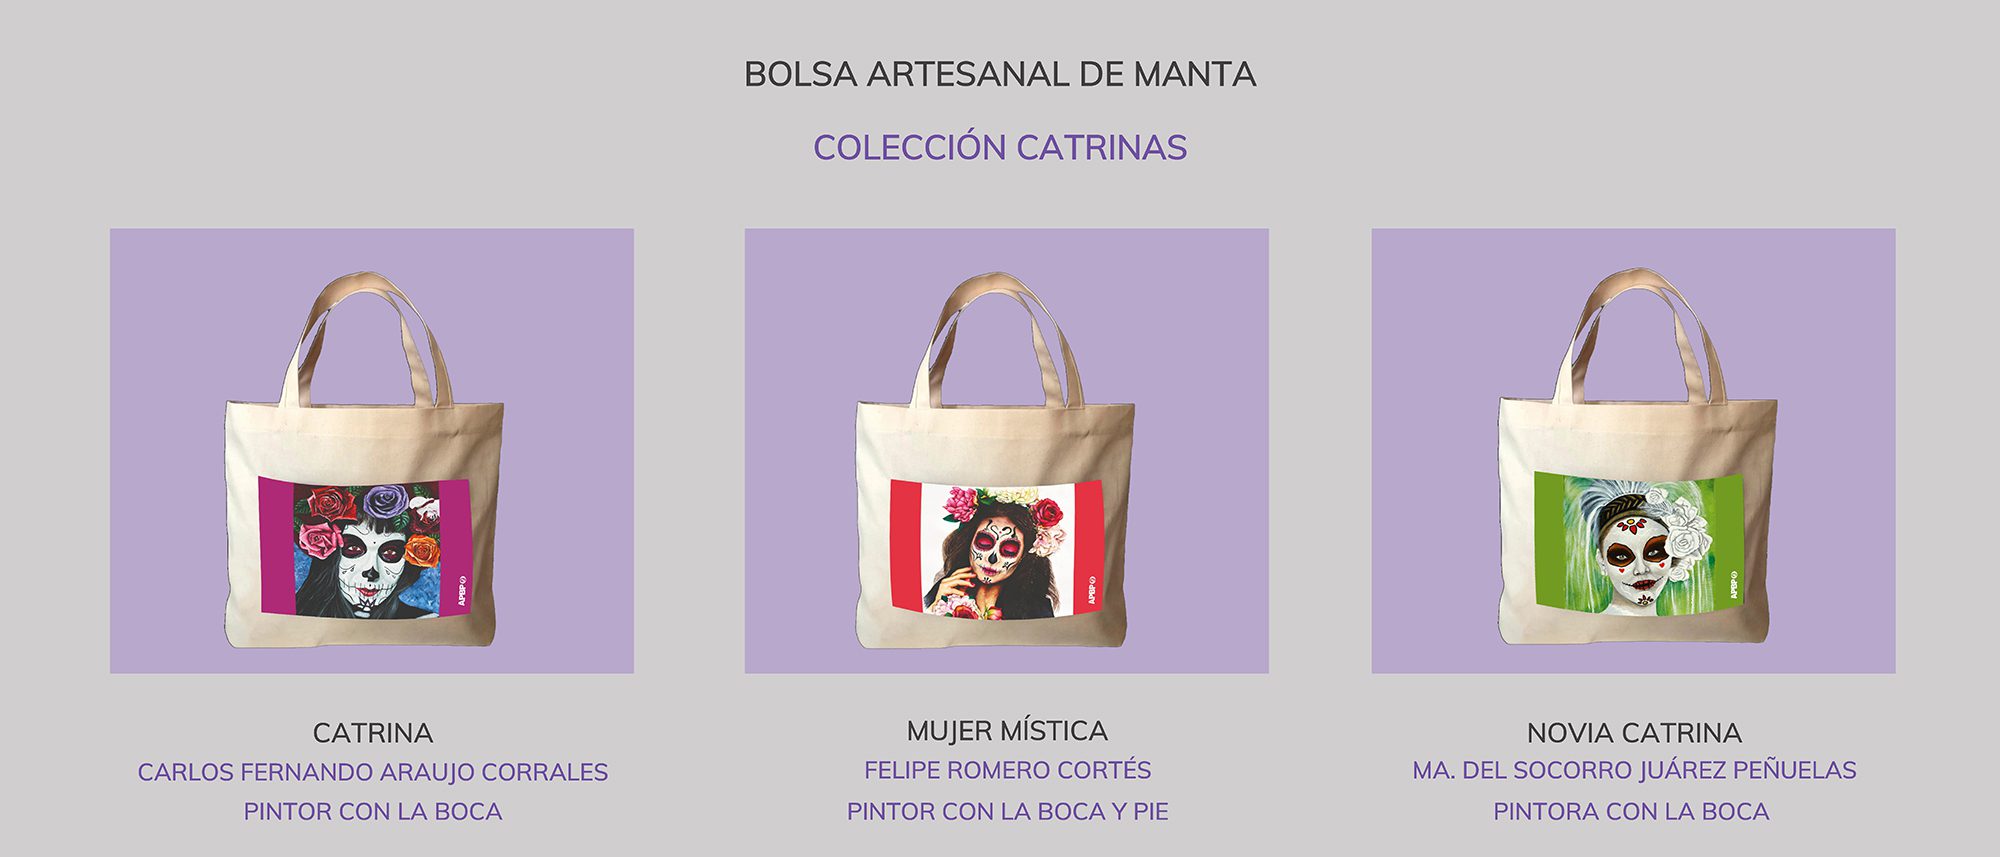 Bolsa artesanal de manta - Colección Catrinas